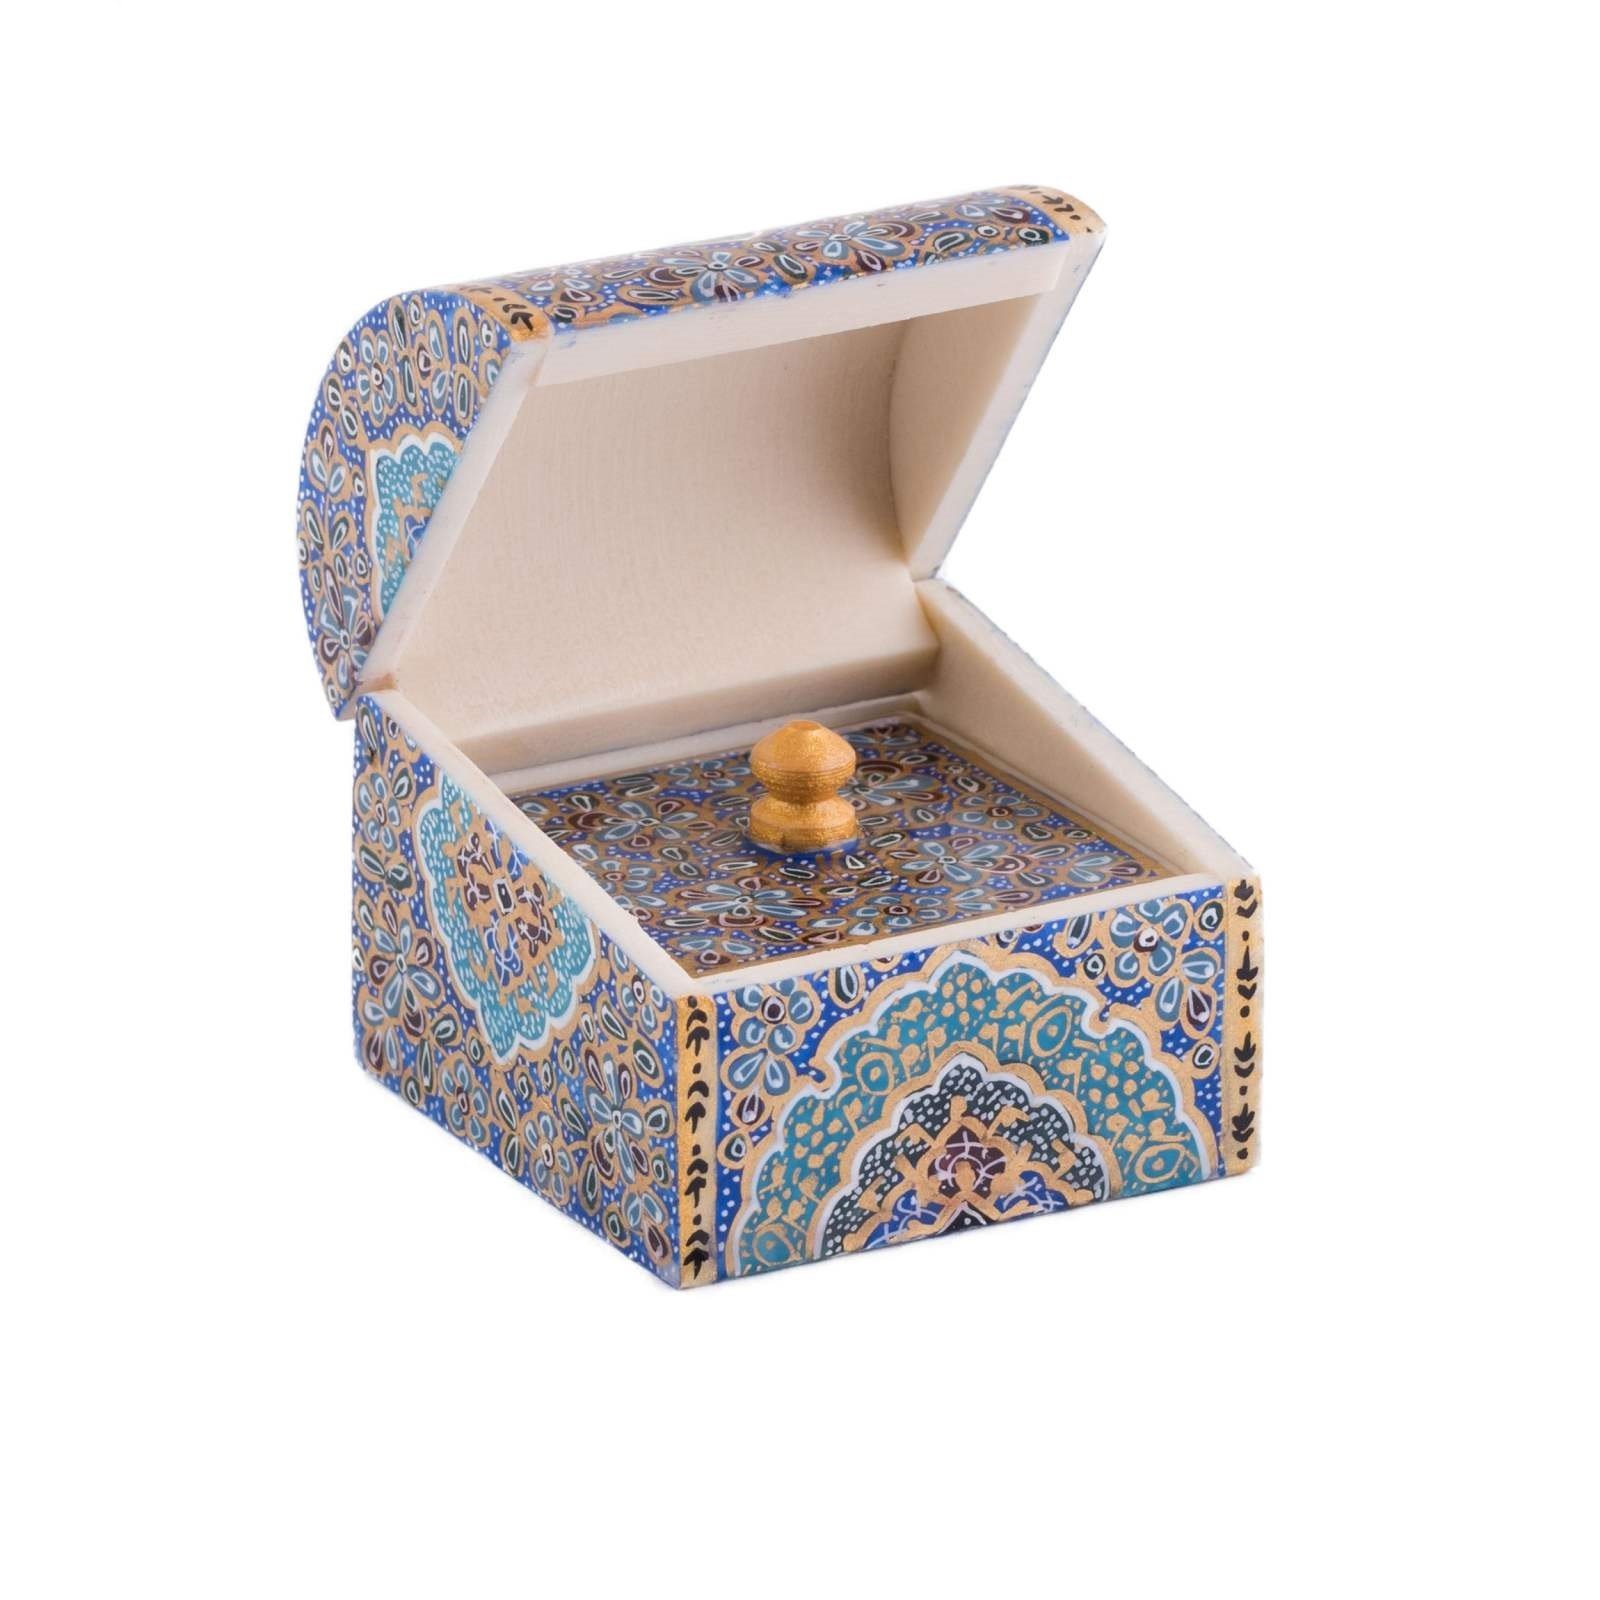 Joyero Bone Handicraft Tazhib 13 Design ,, venta Bone Handicraft, comprar artesanía, artesanía de hueso iraní